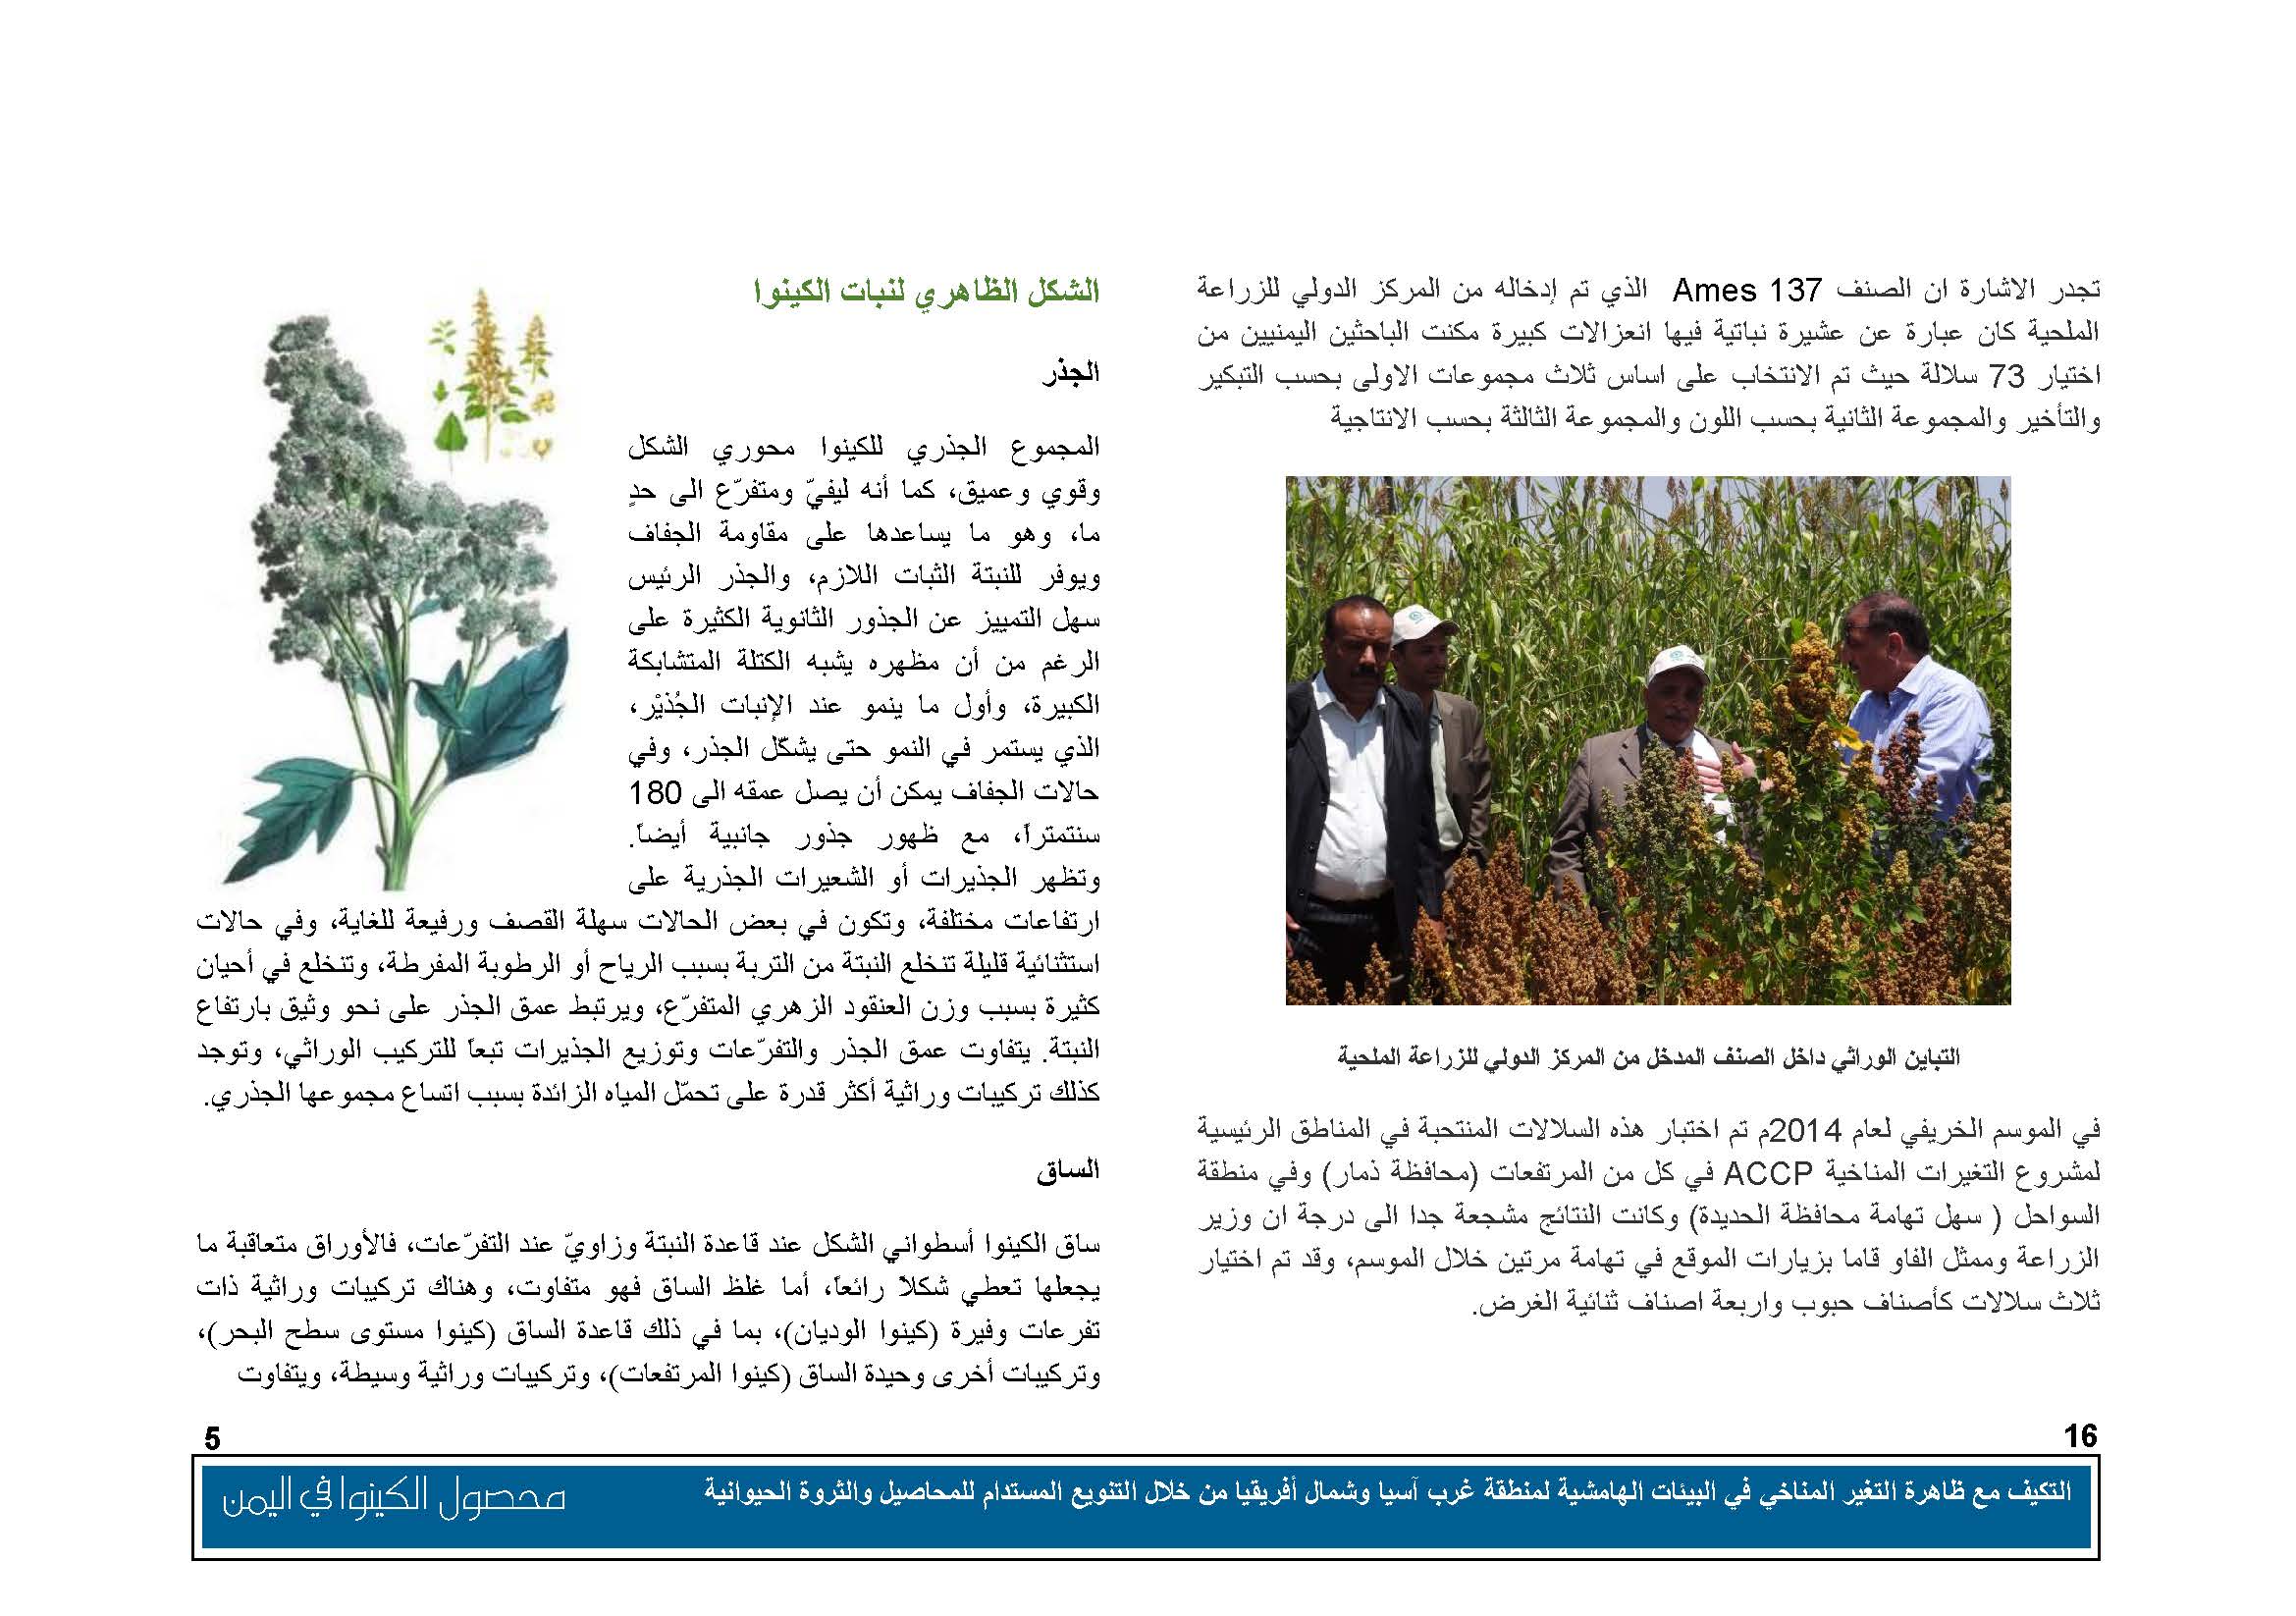 محصول الكينوا في اليمن (1)_Page_06